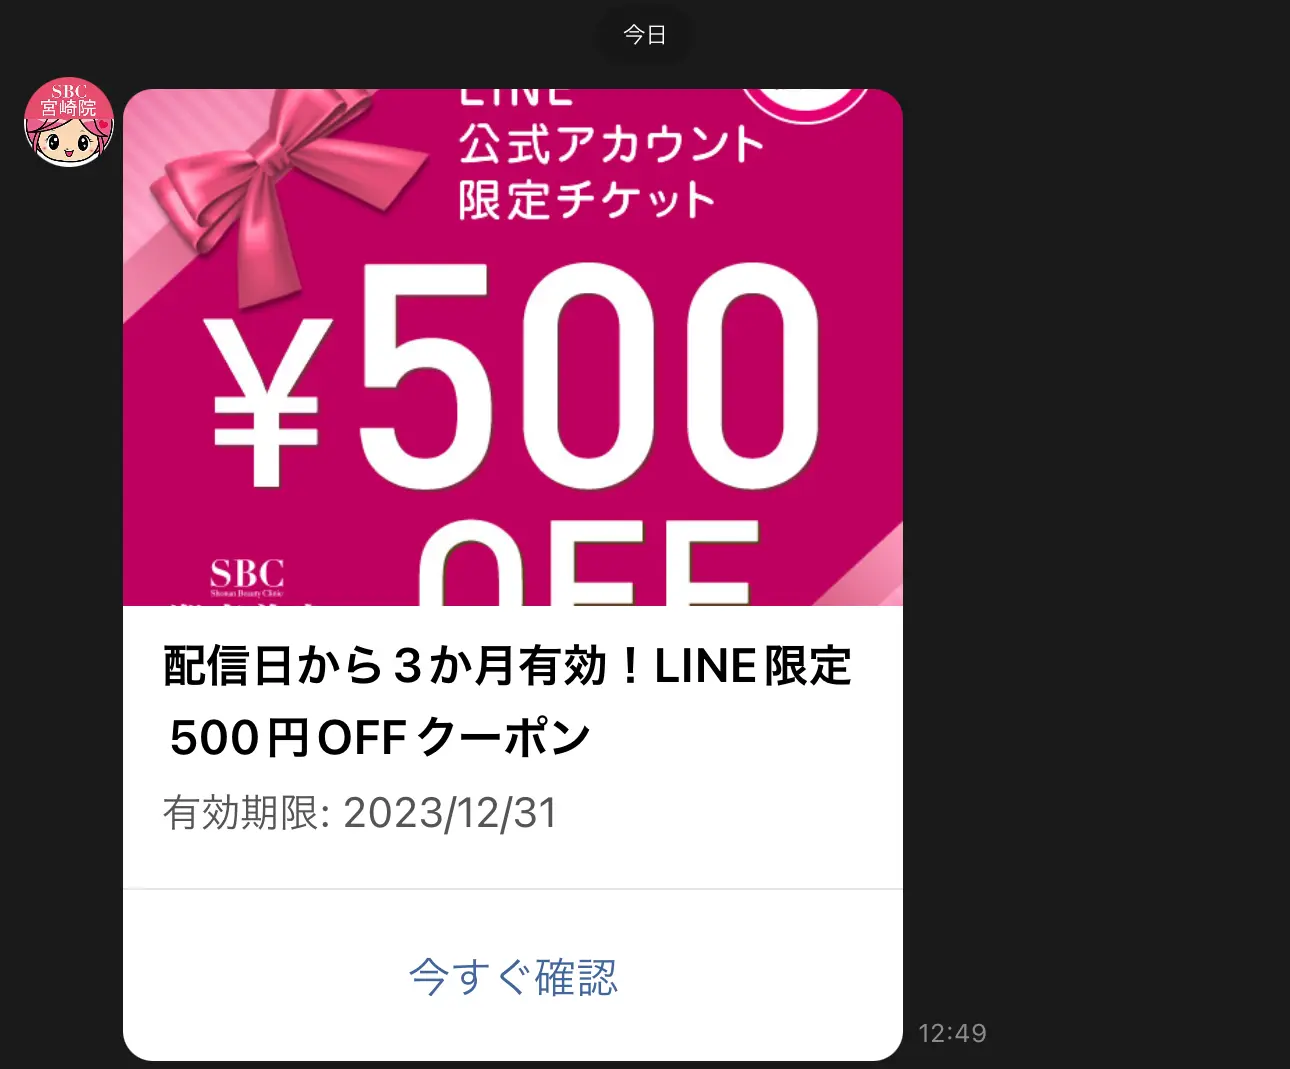 湘南美容クリニックの各院LINE公式アカウント友だち追加で即座に500円チケット配布